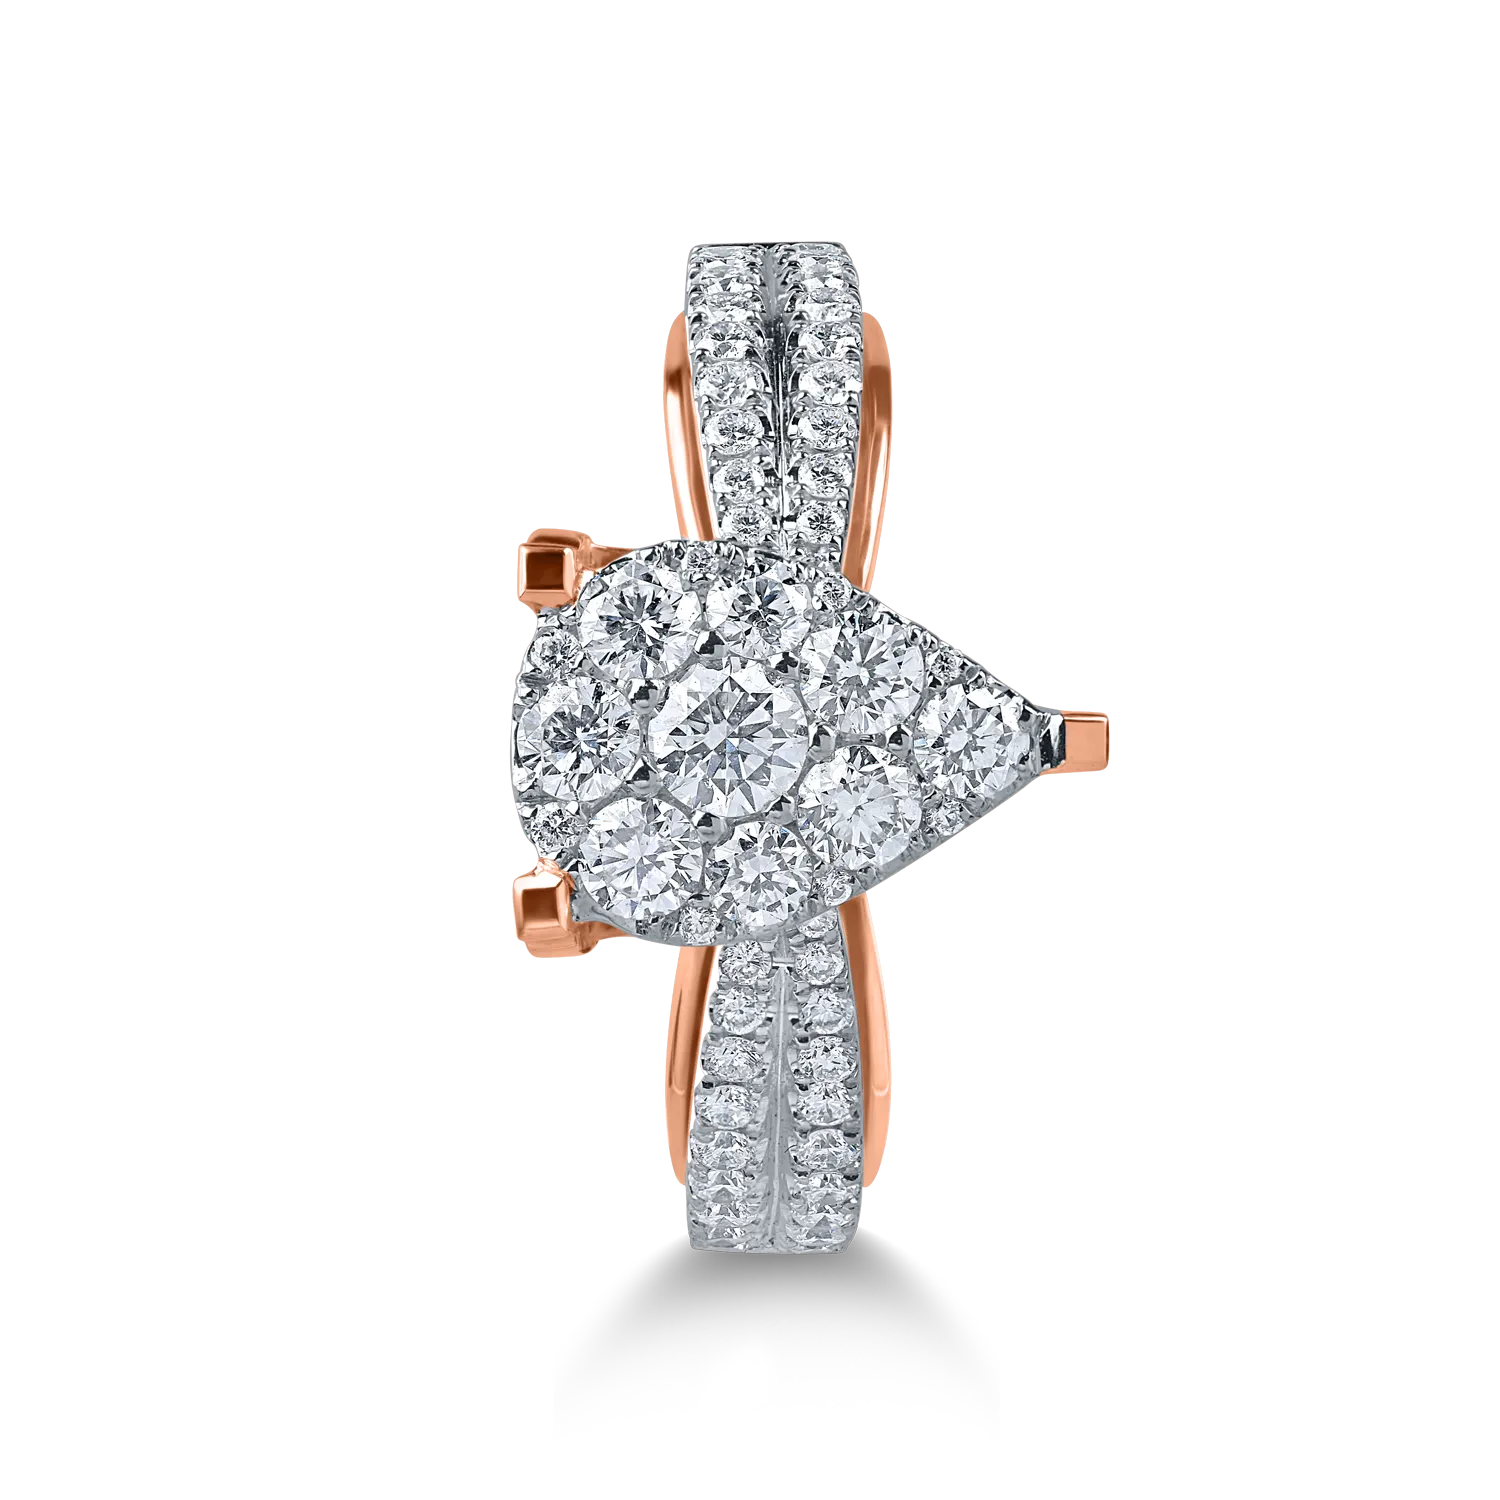 Златен годежен пръстен с бяла роза и диаманти 0.8кт